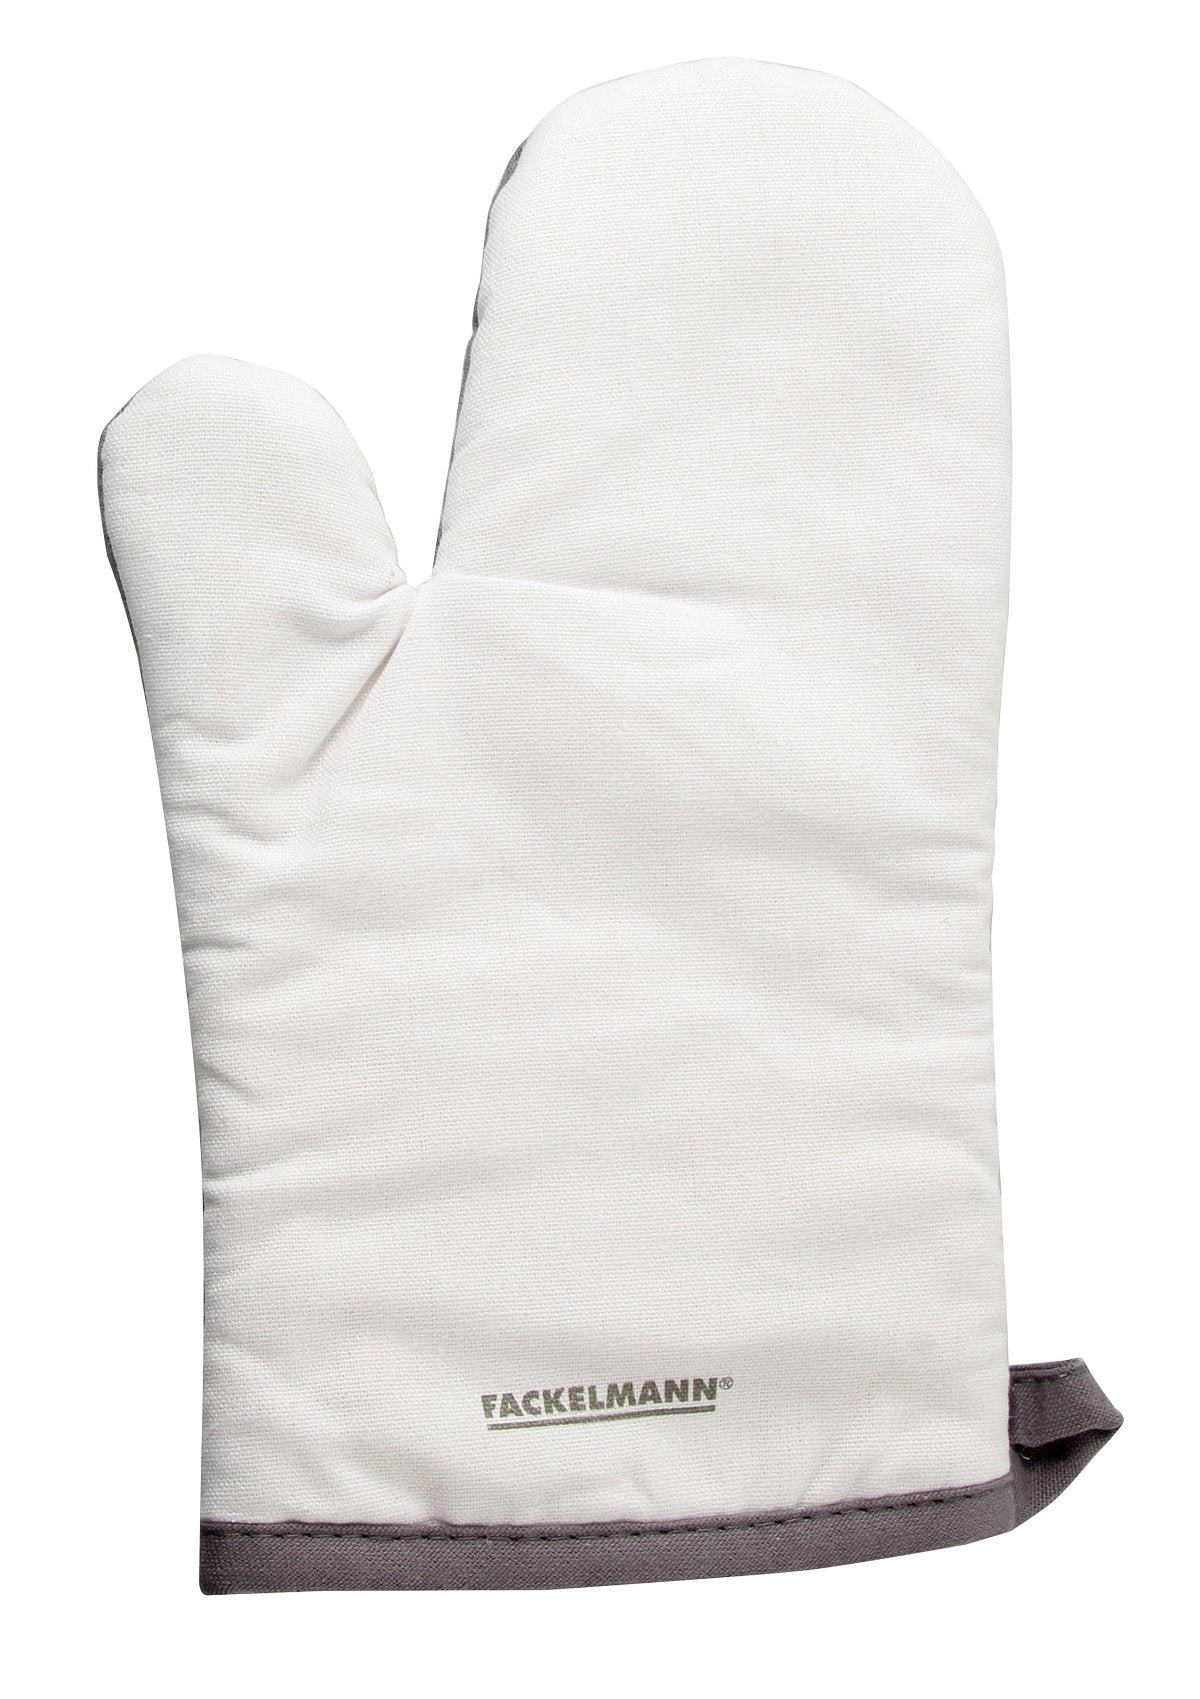 Fackelmann Cotton Oven Glove